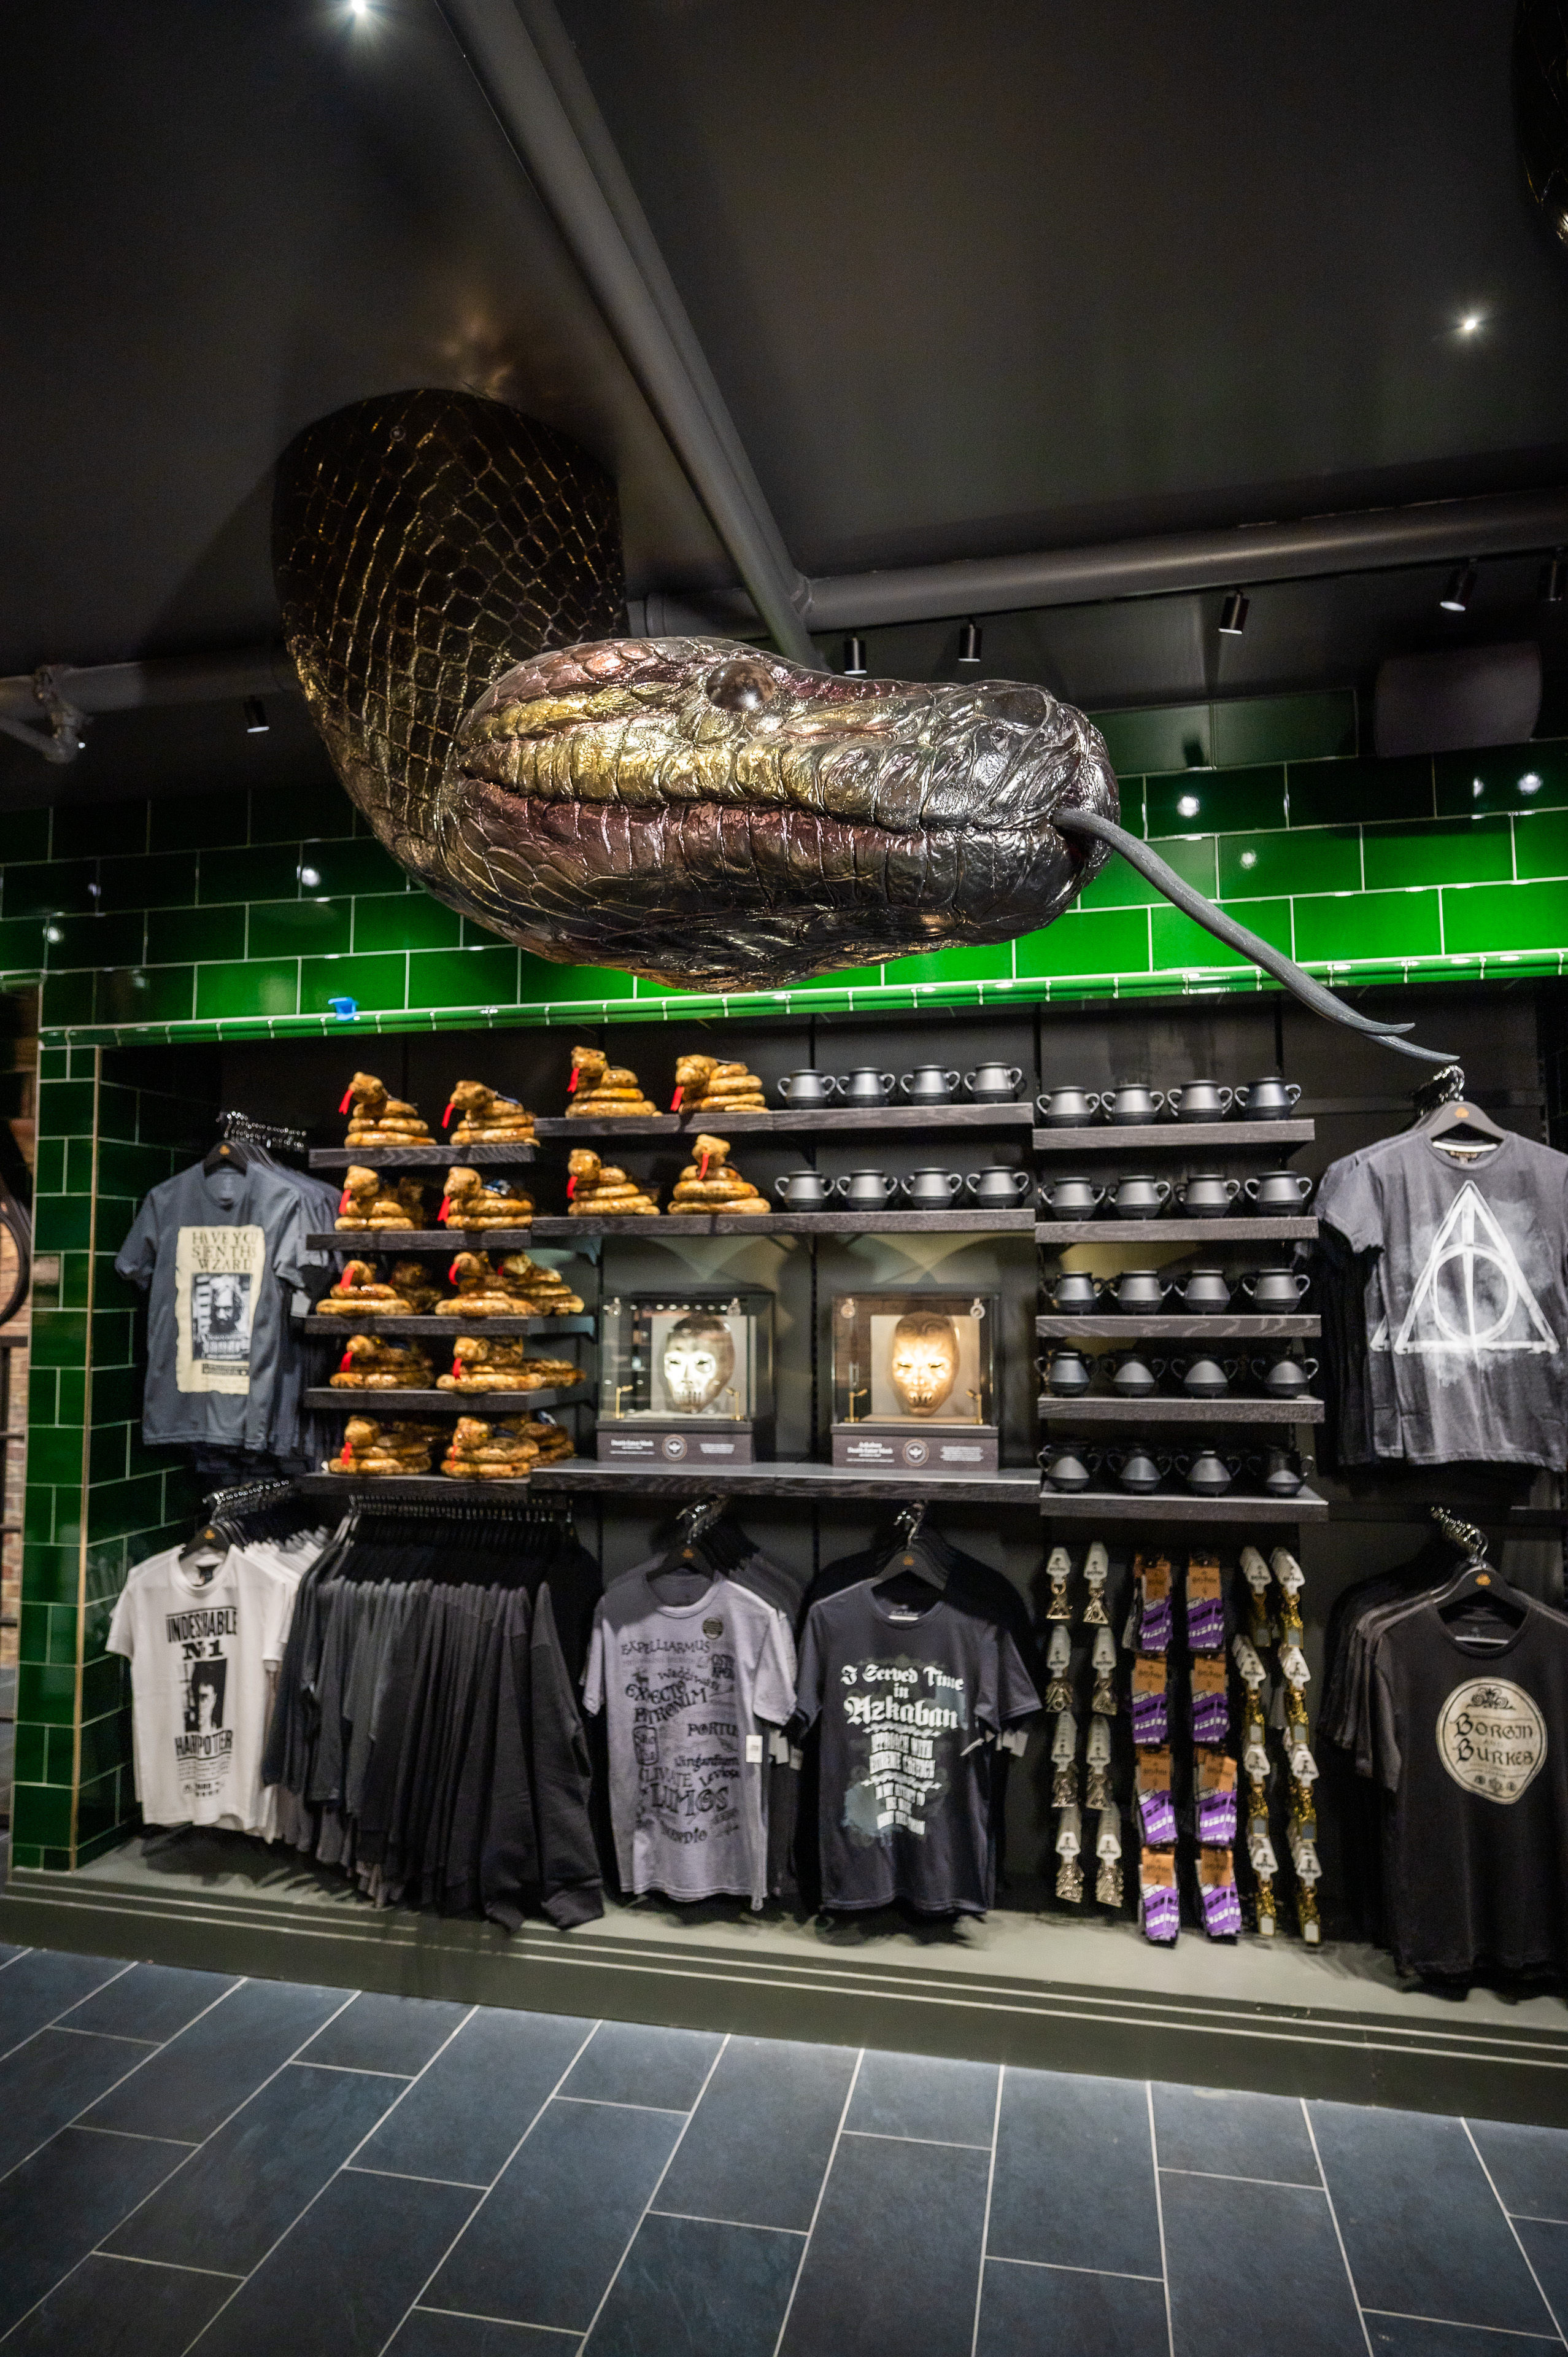 Harry Potter Shop  Official Warner Bros. Shop